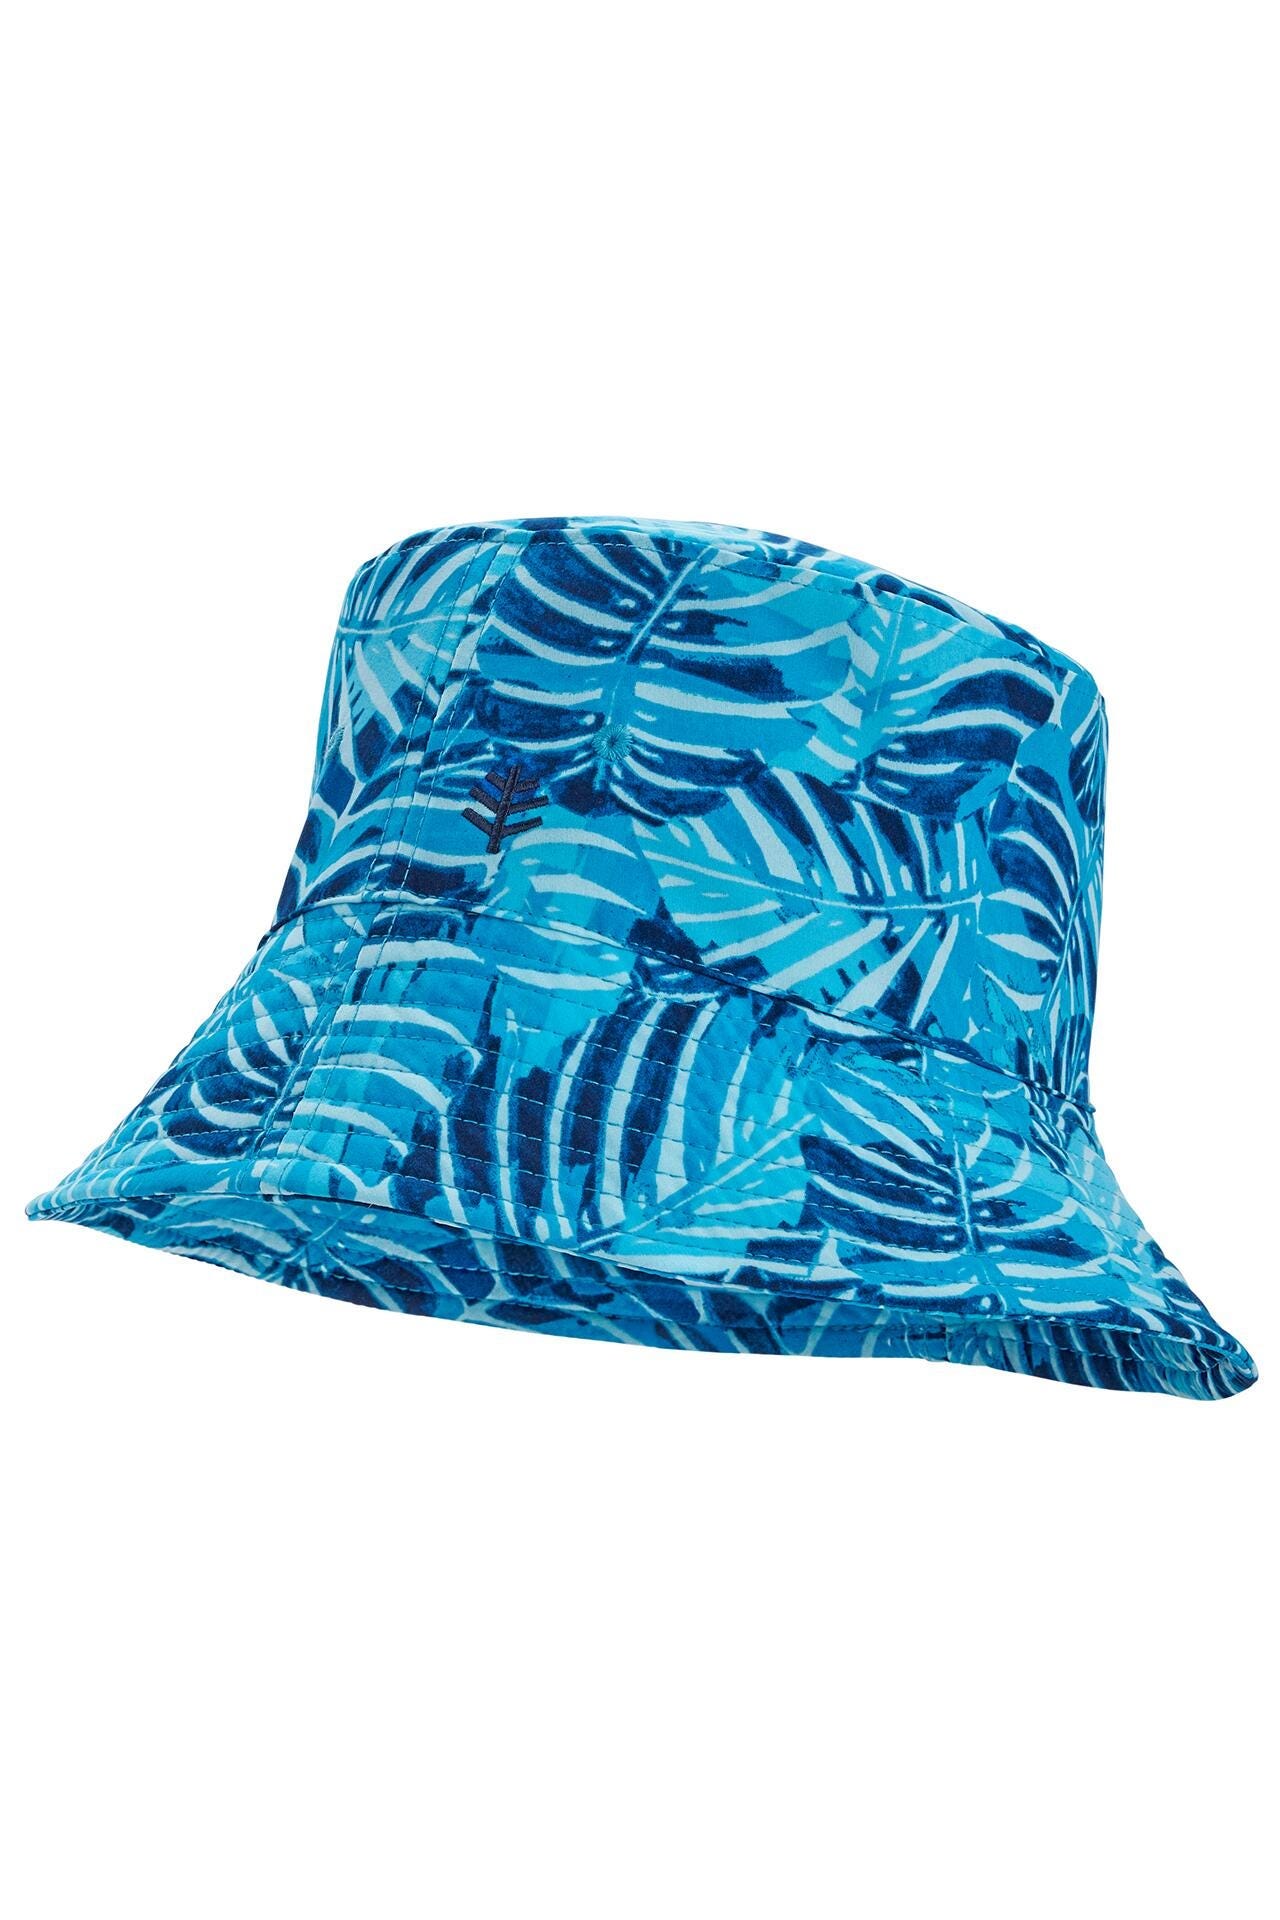 SA Company Bucket Hat | Polynesian 2.0 | UPF 50